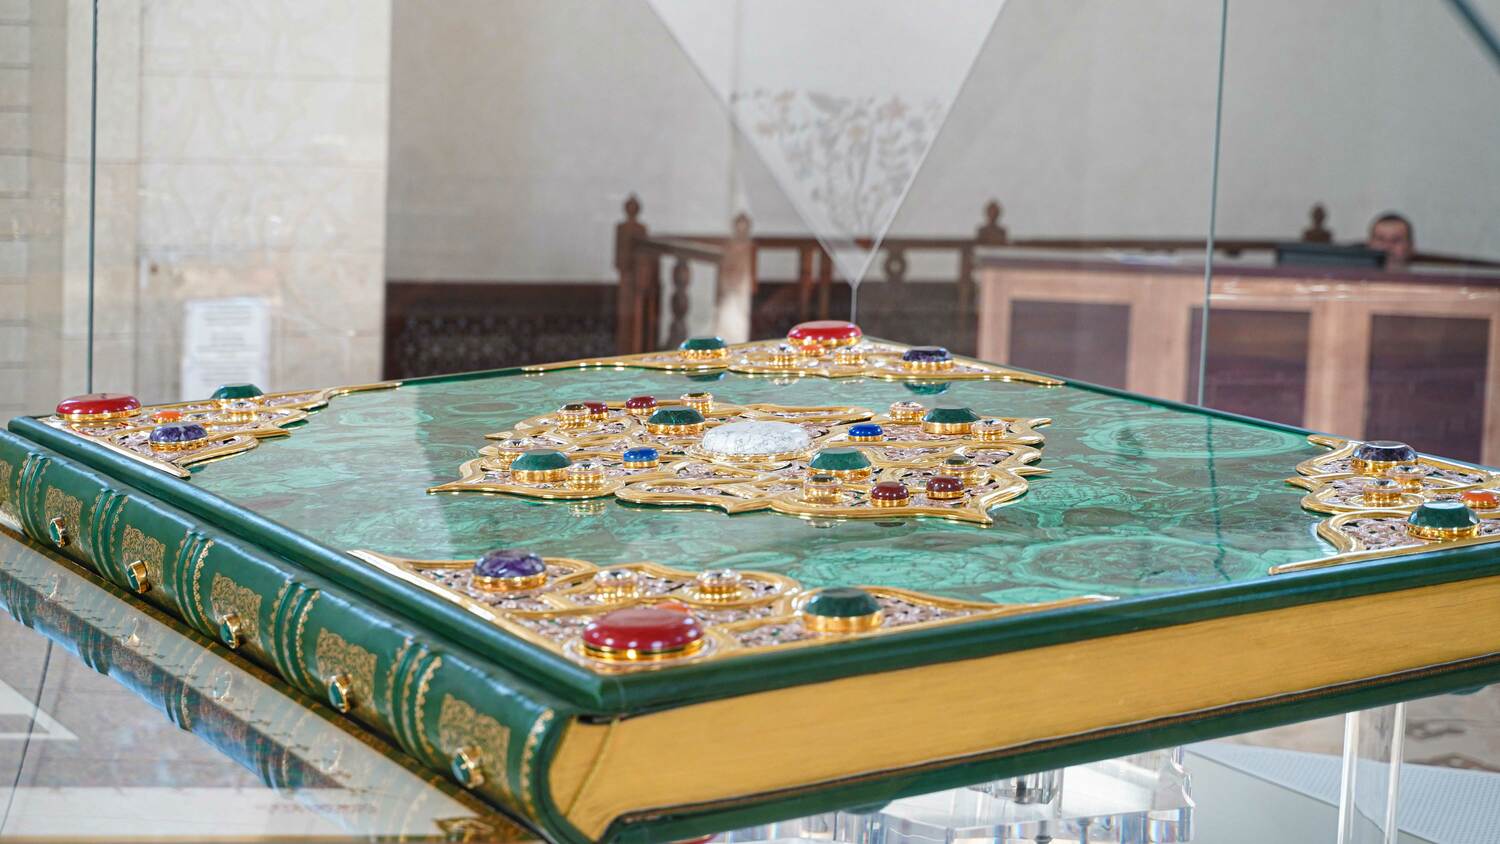 Самый большой печатный Коран в мире